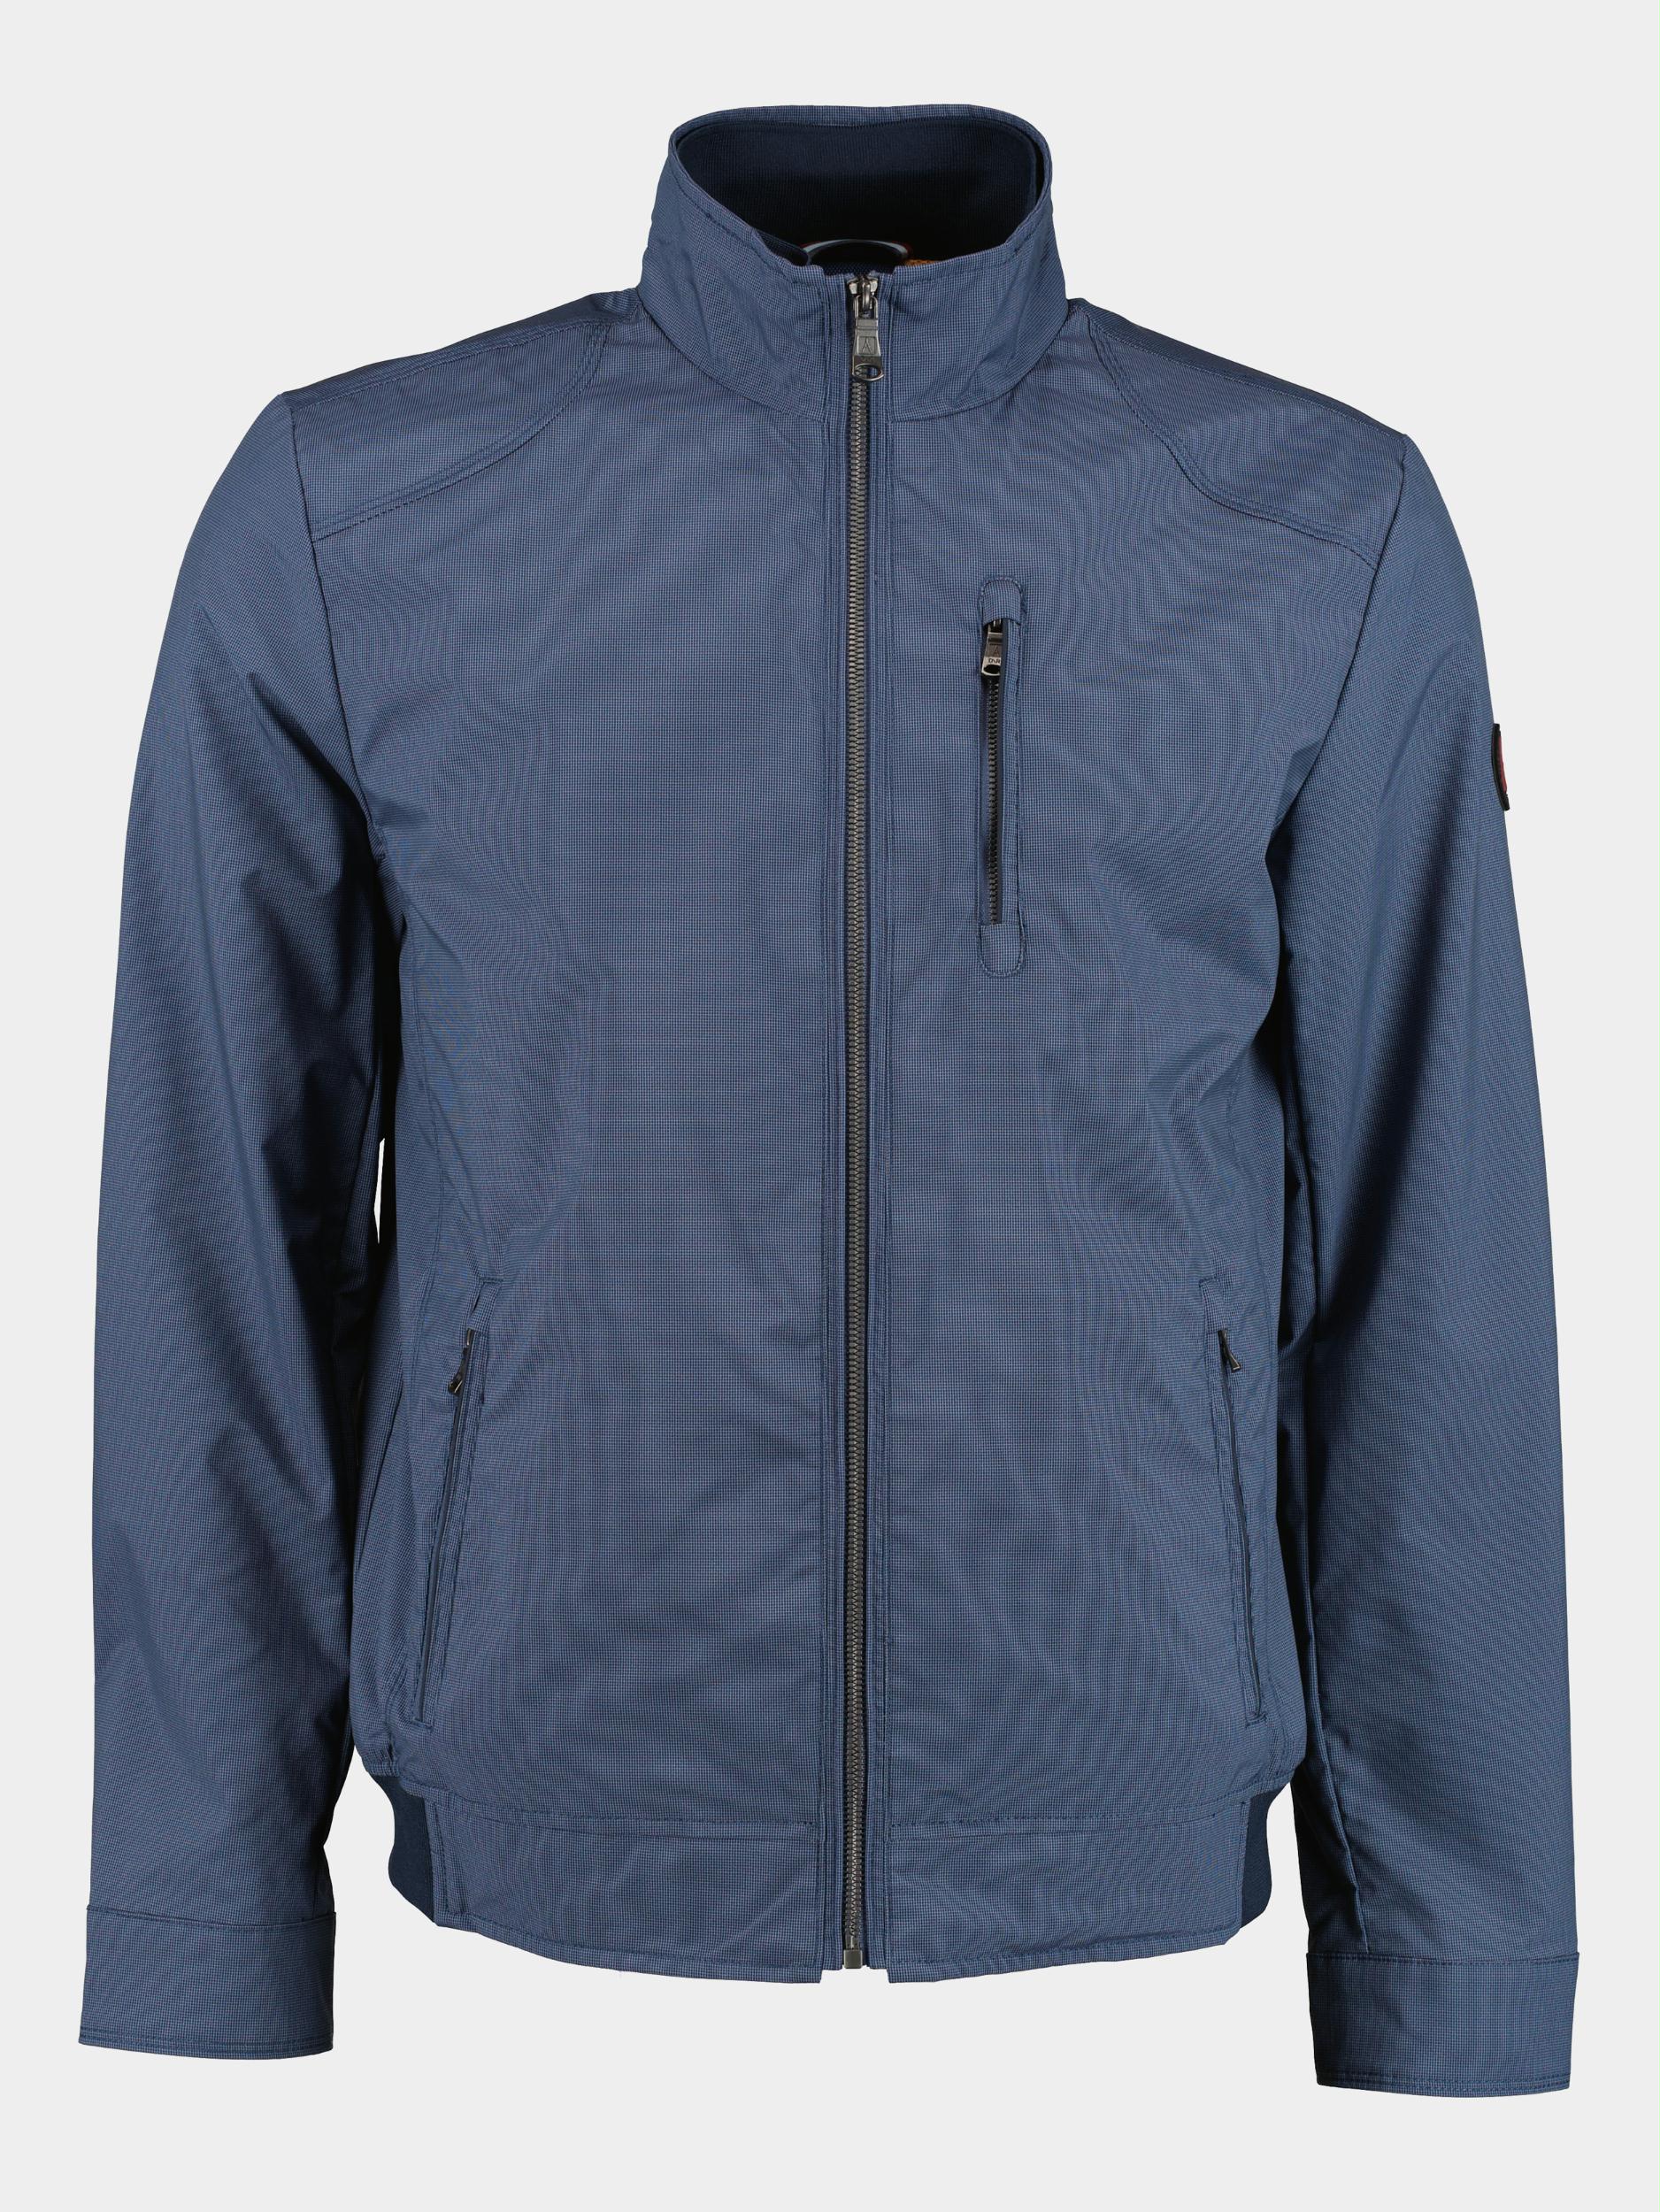 DNR Zomerjack Blauw Textile Jacket 21781/780